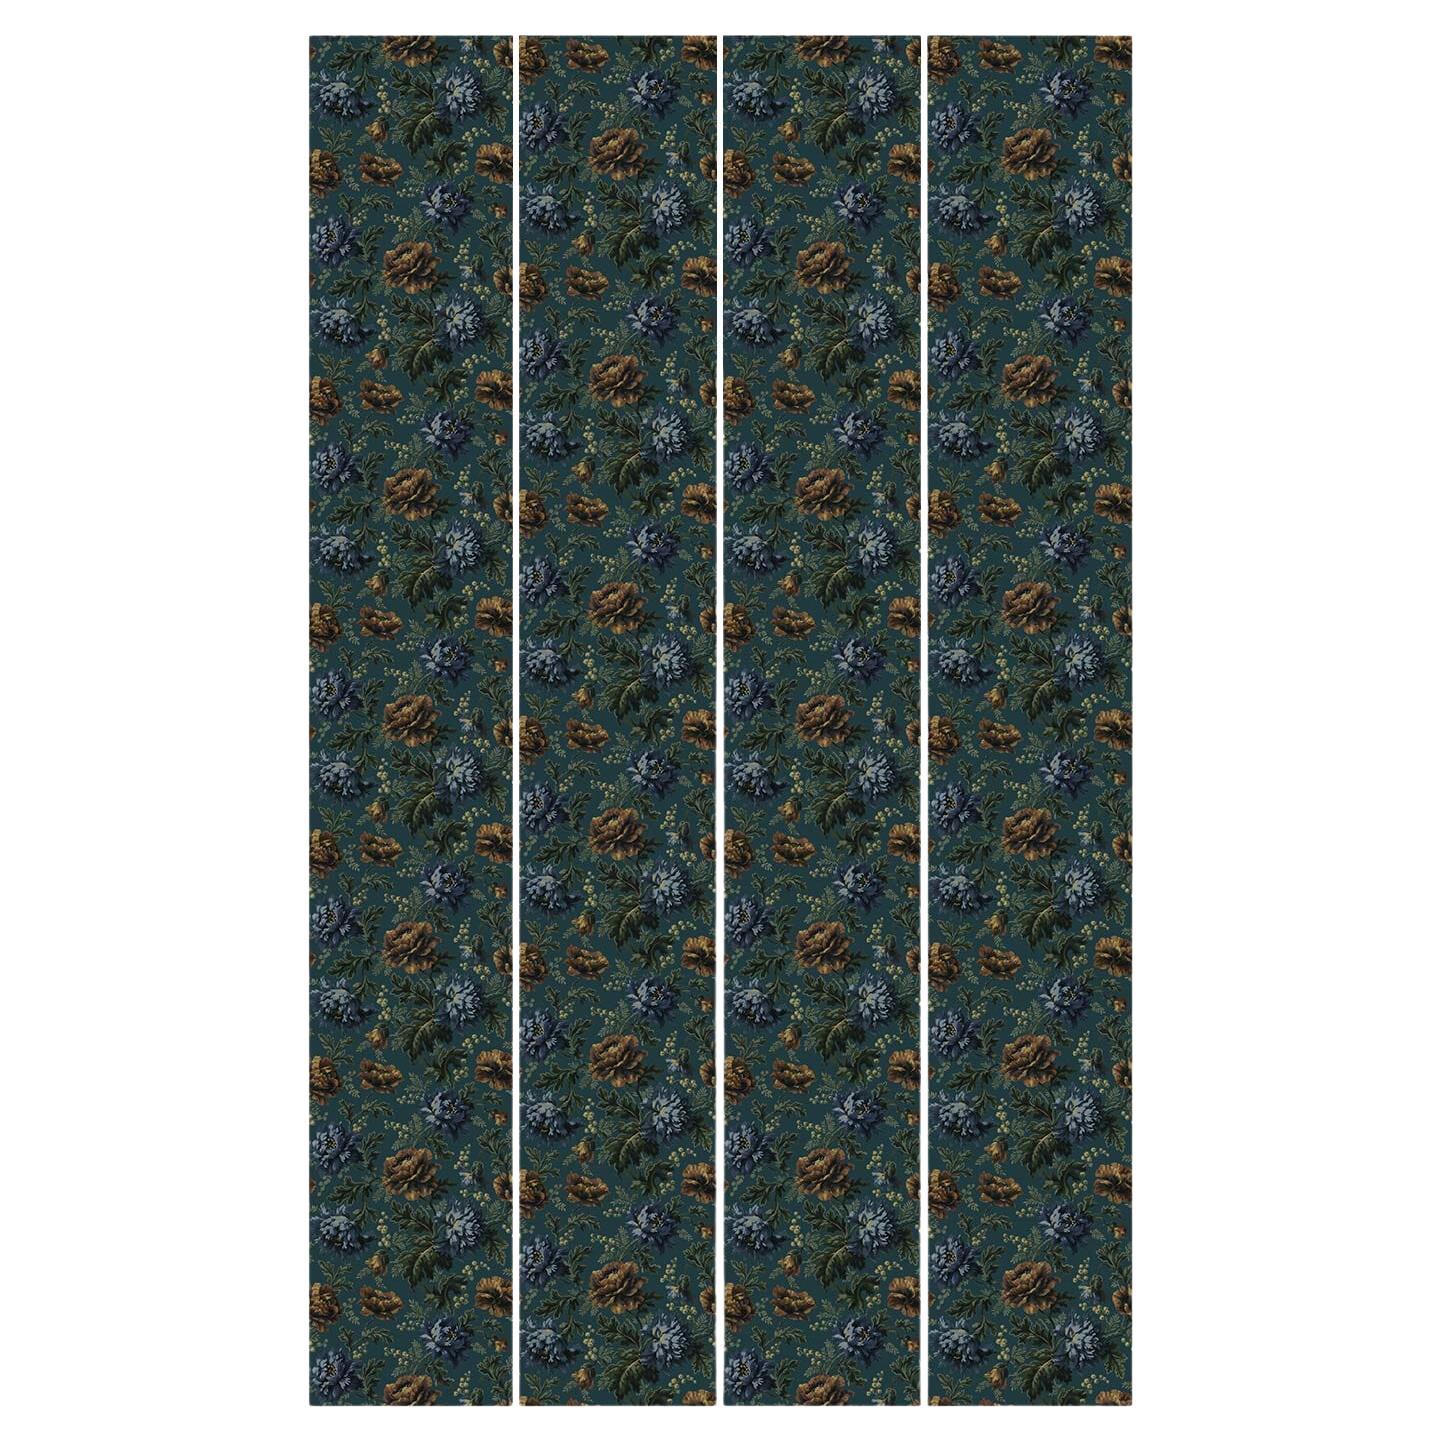 Die malerische OPIA-Tapete zeigt Mohnblumen und zart illustriertes Blattwerk. Diese tealfarbene Version mit bronzefarbenen, grünen und blauen Details bringt Farbe in Ihr Zuhause. Unsere Tapeten werden aus PVC-freien, umweltfreundlichen Materialien